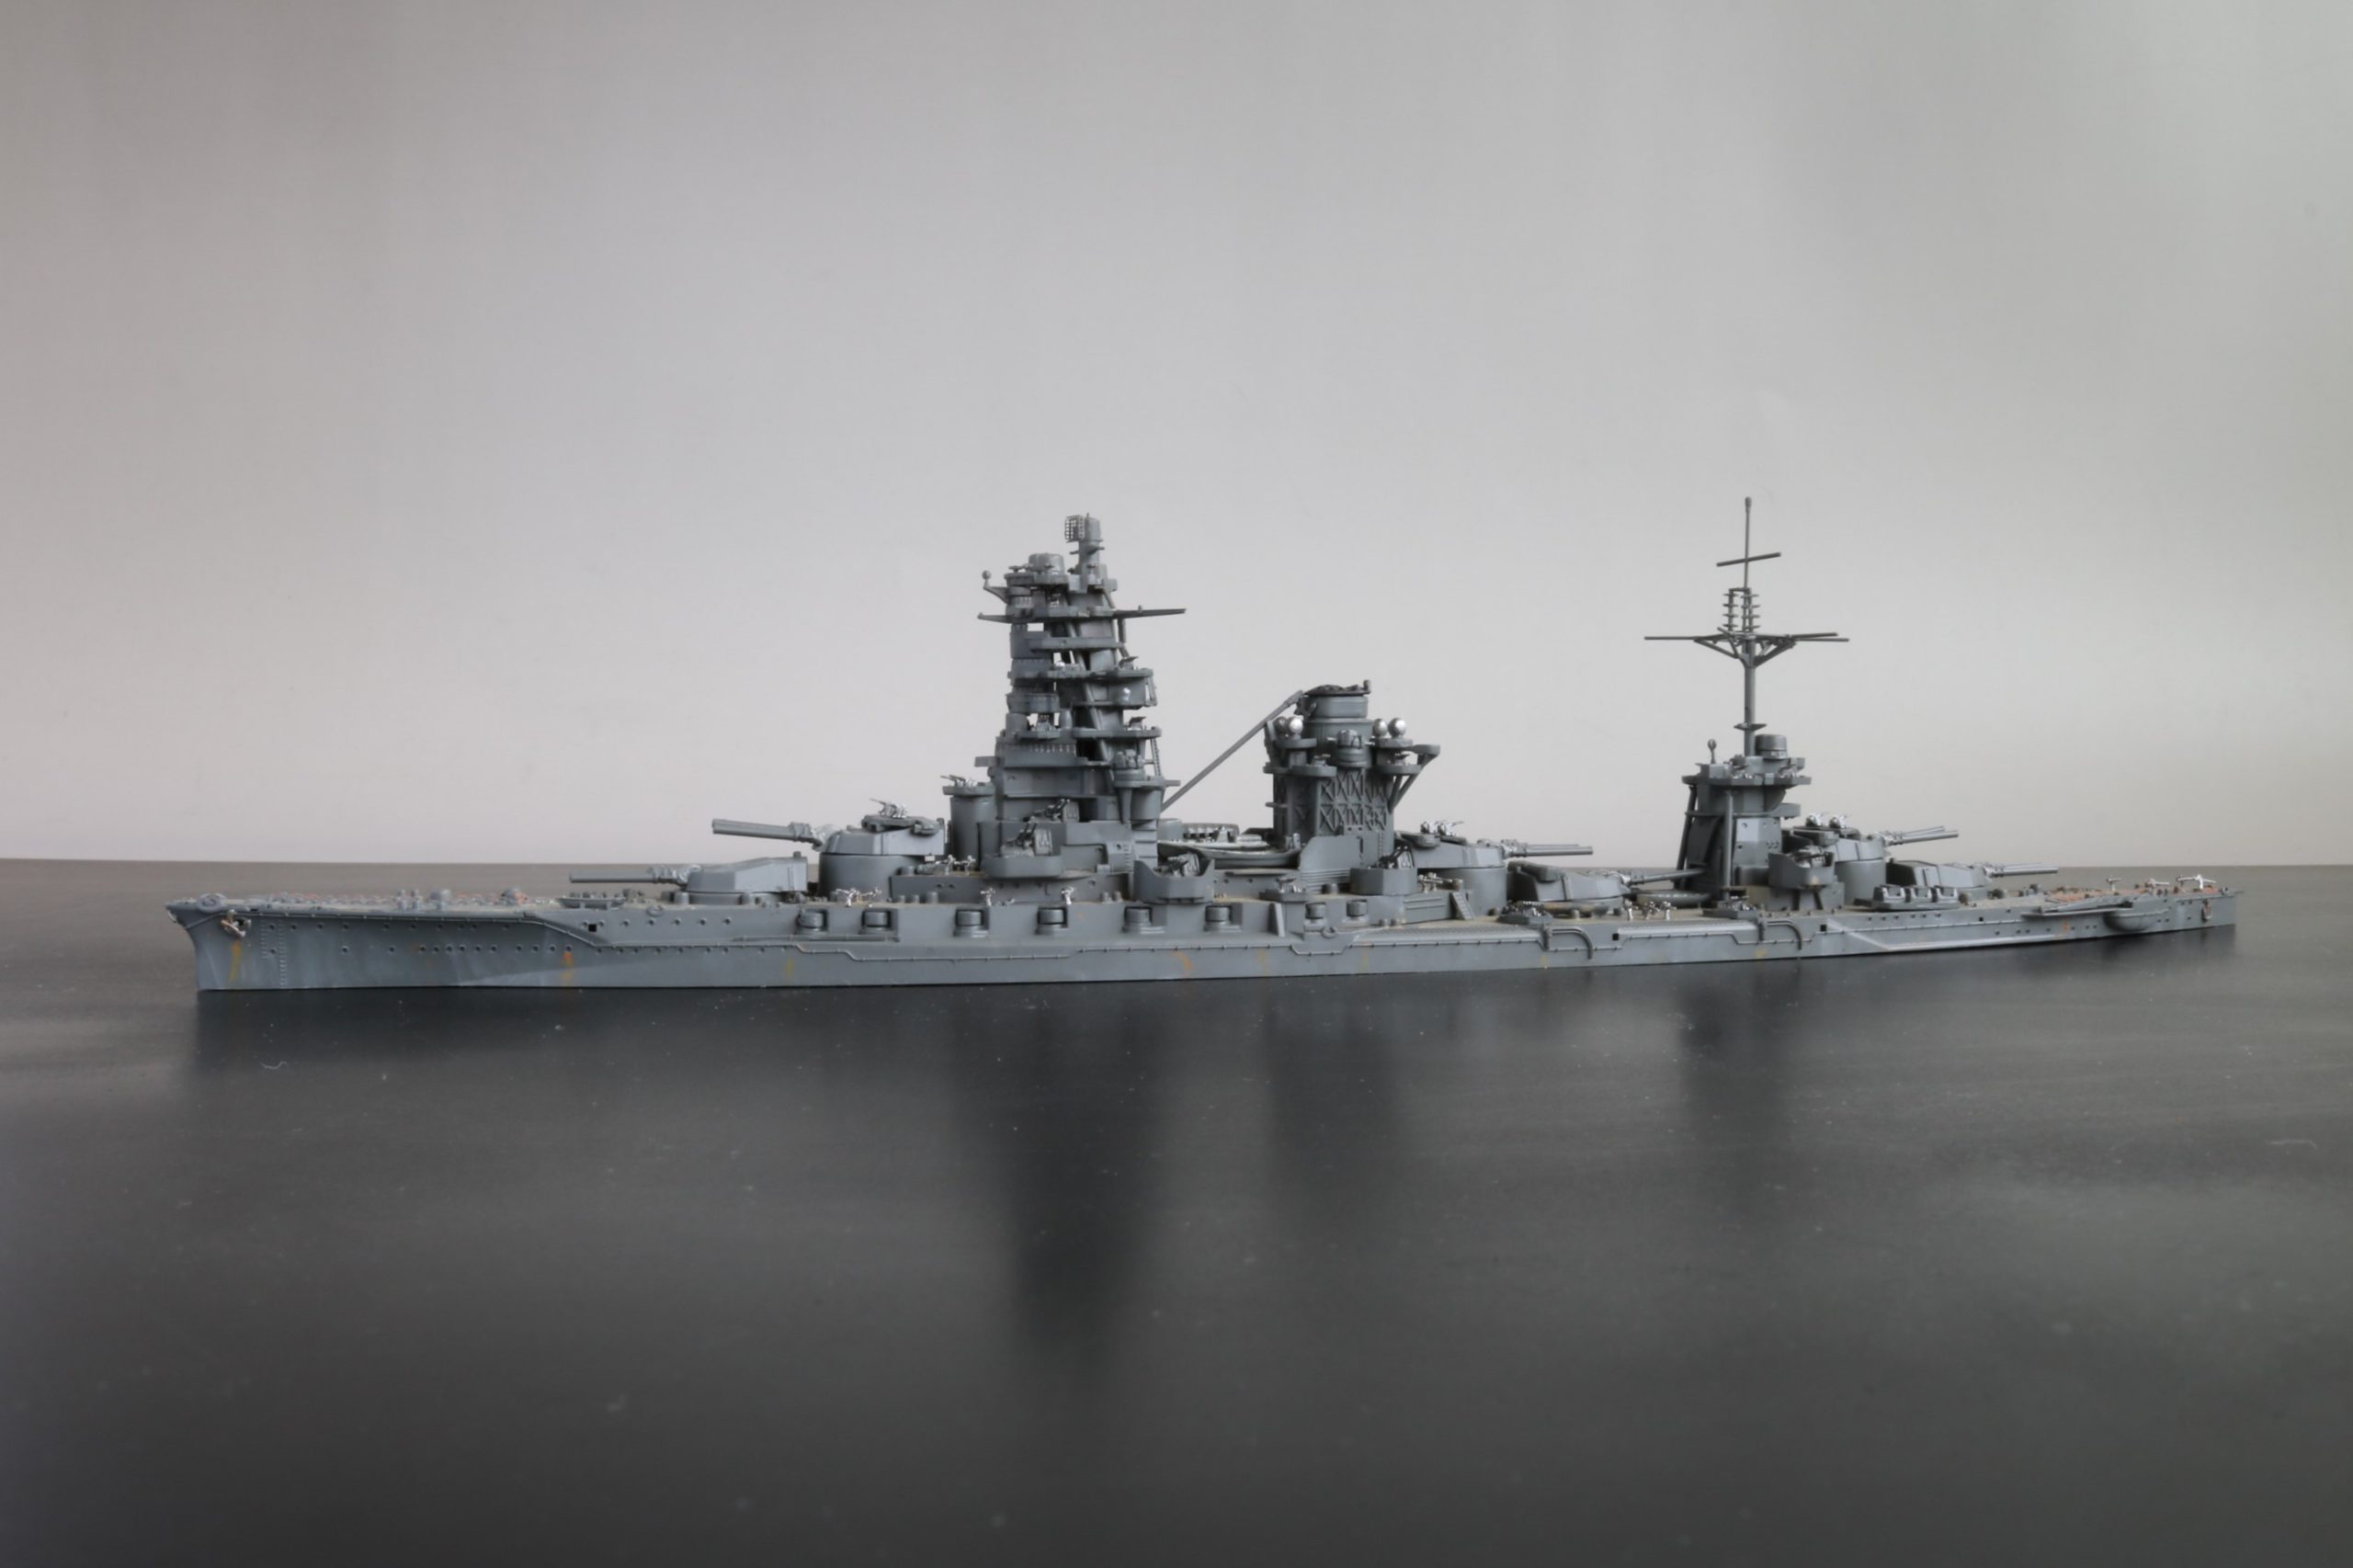 架空戦艦 伊勢改 Fiction Battleship Ise-kai 1/700 フジミ模型 Fujimi